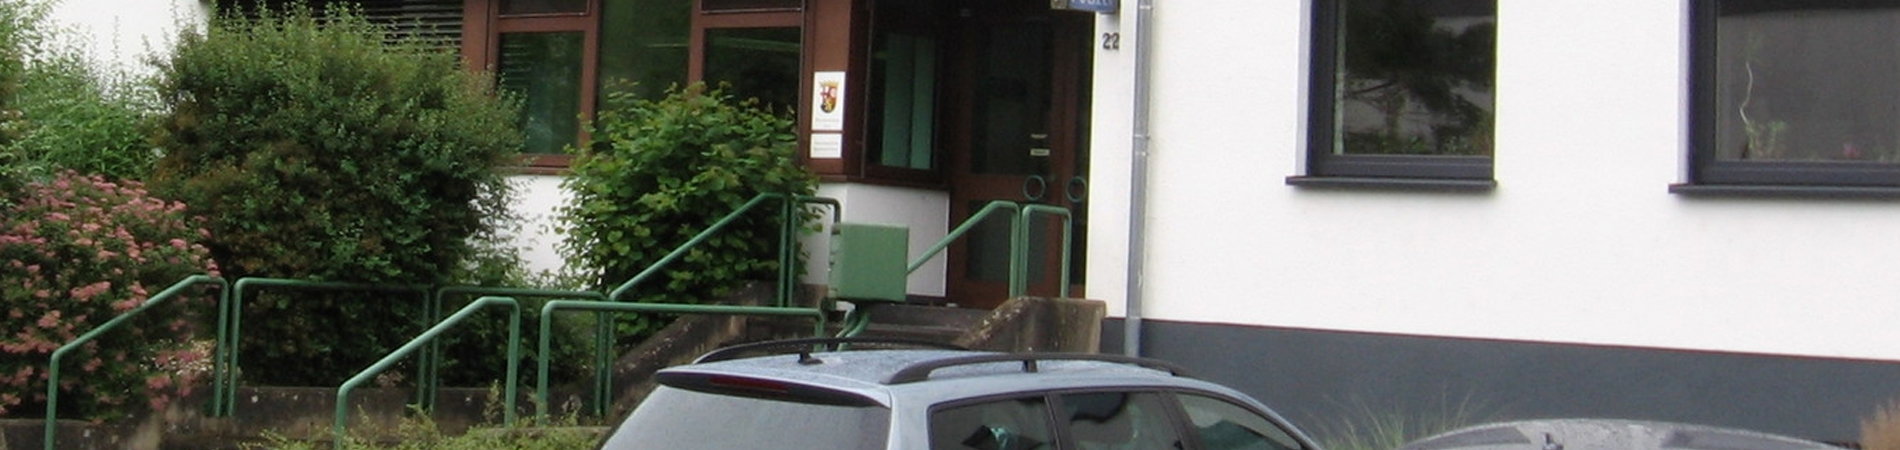 Dienstgebäude Polizeiinspektion Bernkastel